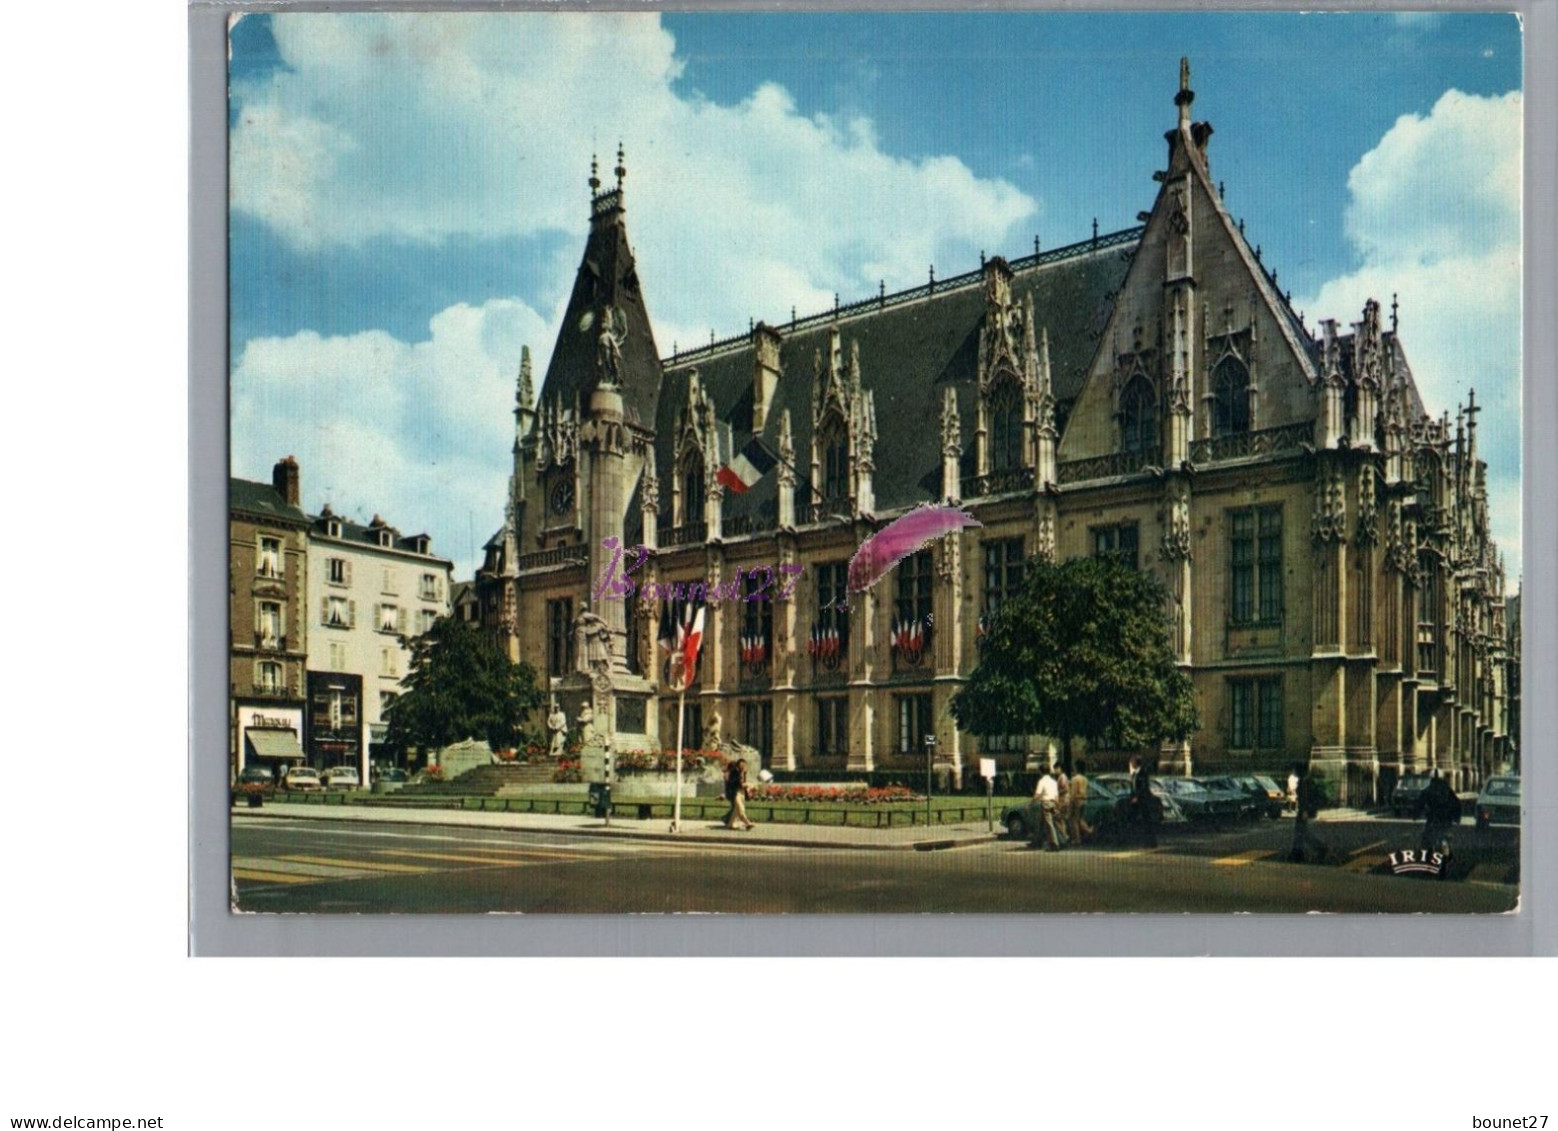 ROUEN 76 - Le Palais De Justice La Façade 1985 - Rouen